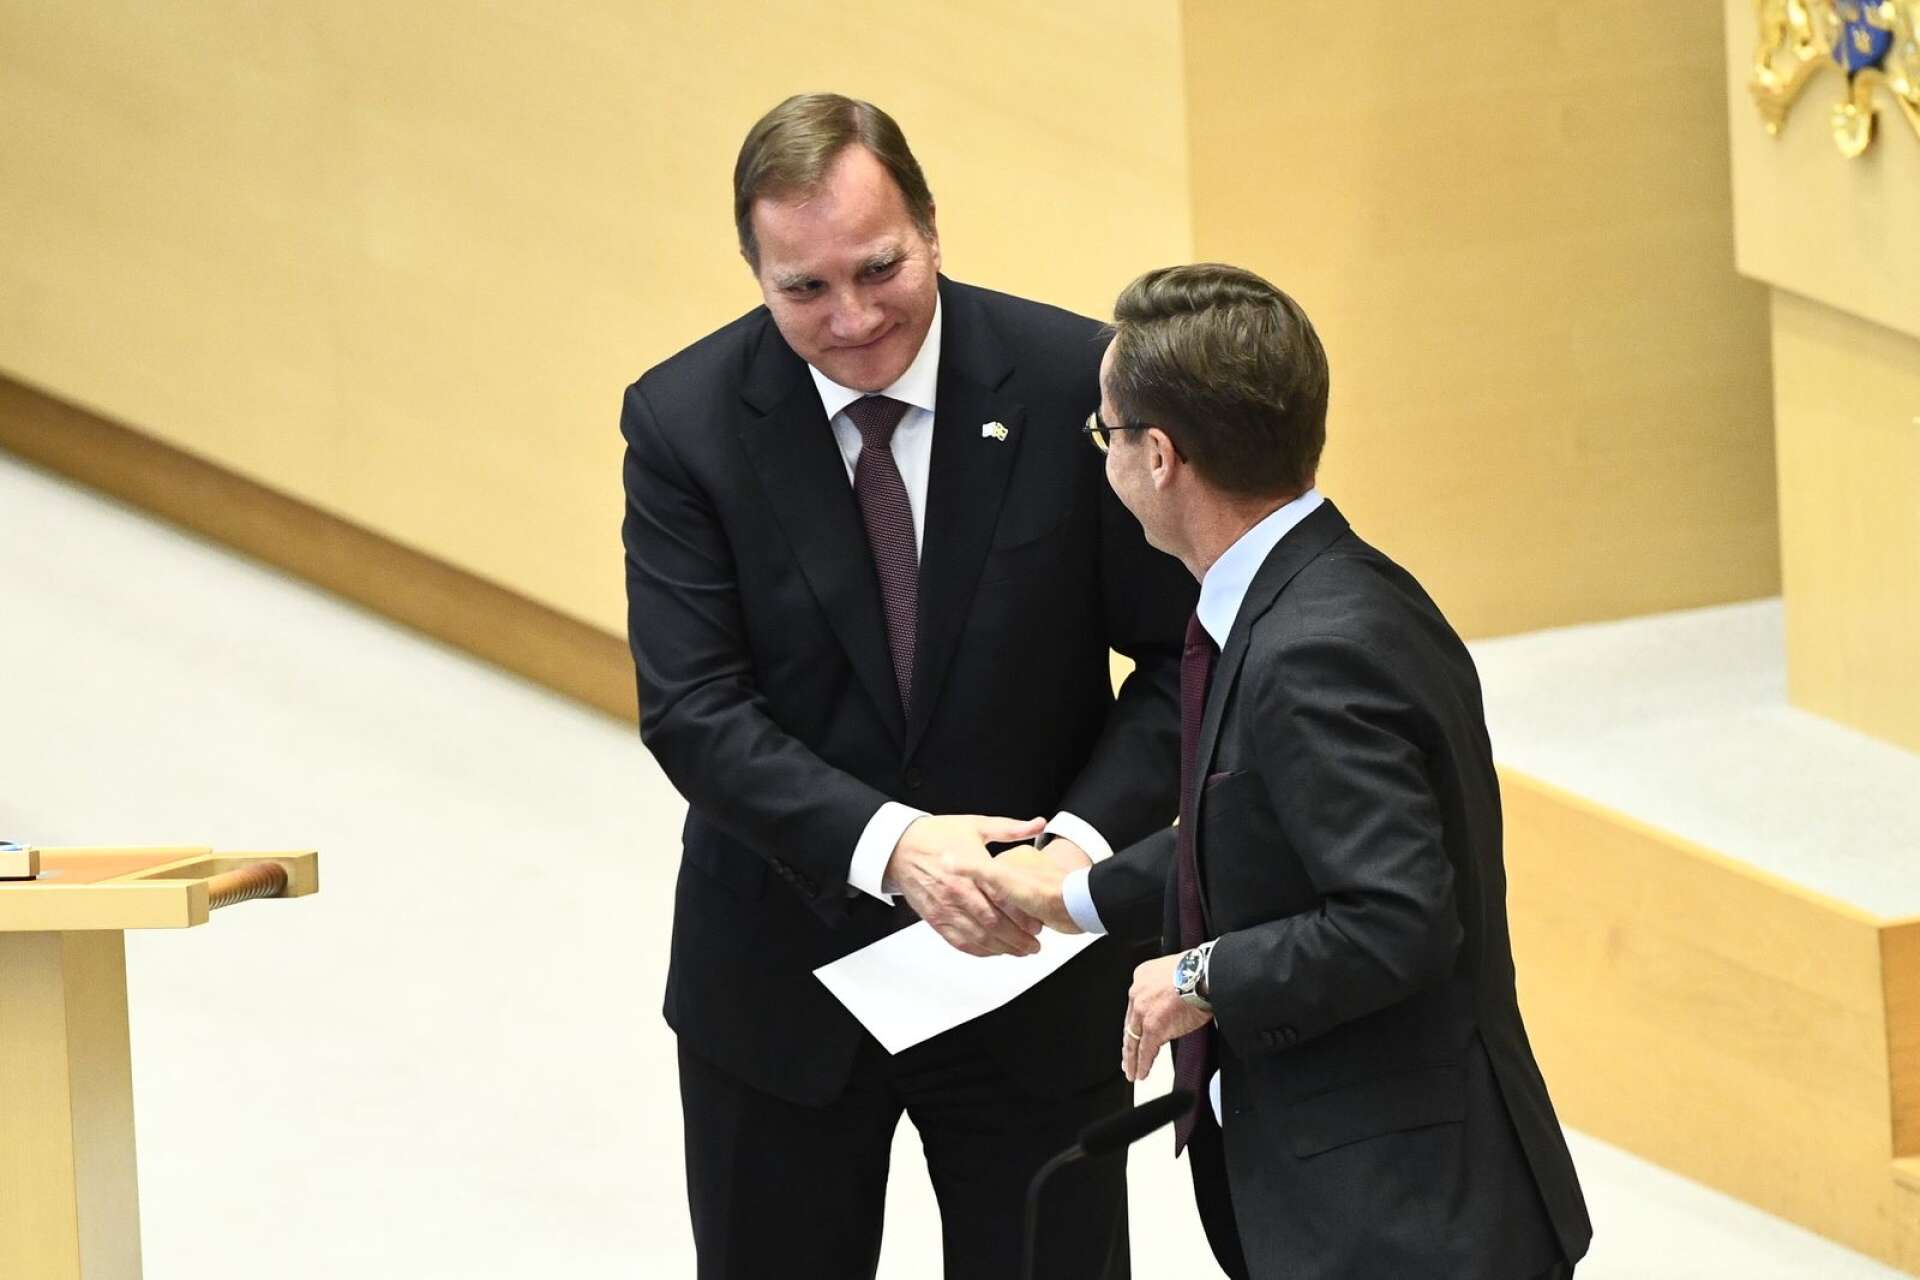 Socialdemokraternas partiledare tillika statsminister Stefan Löfven gjorde sin sista partiledardebatt i riksdagen på onsdagen och avtackades av bland andra Moderaternas partiledare Ulf Kristersson.